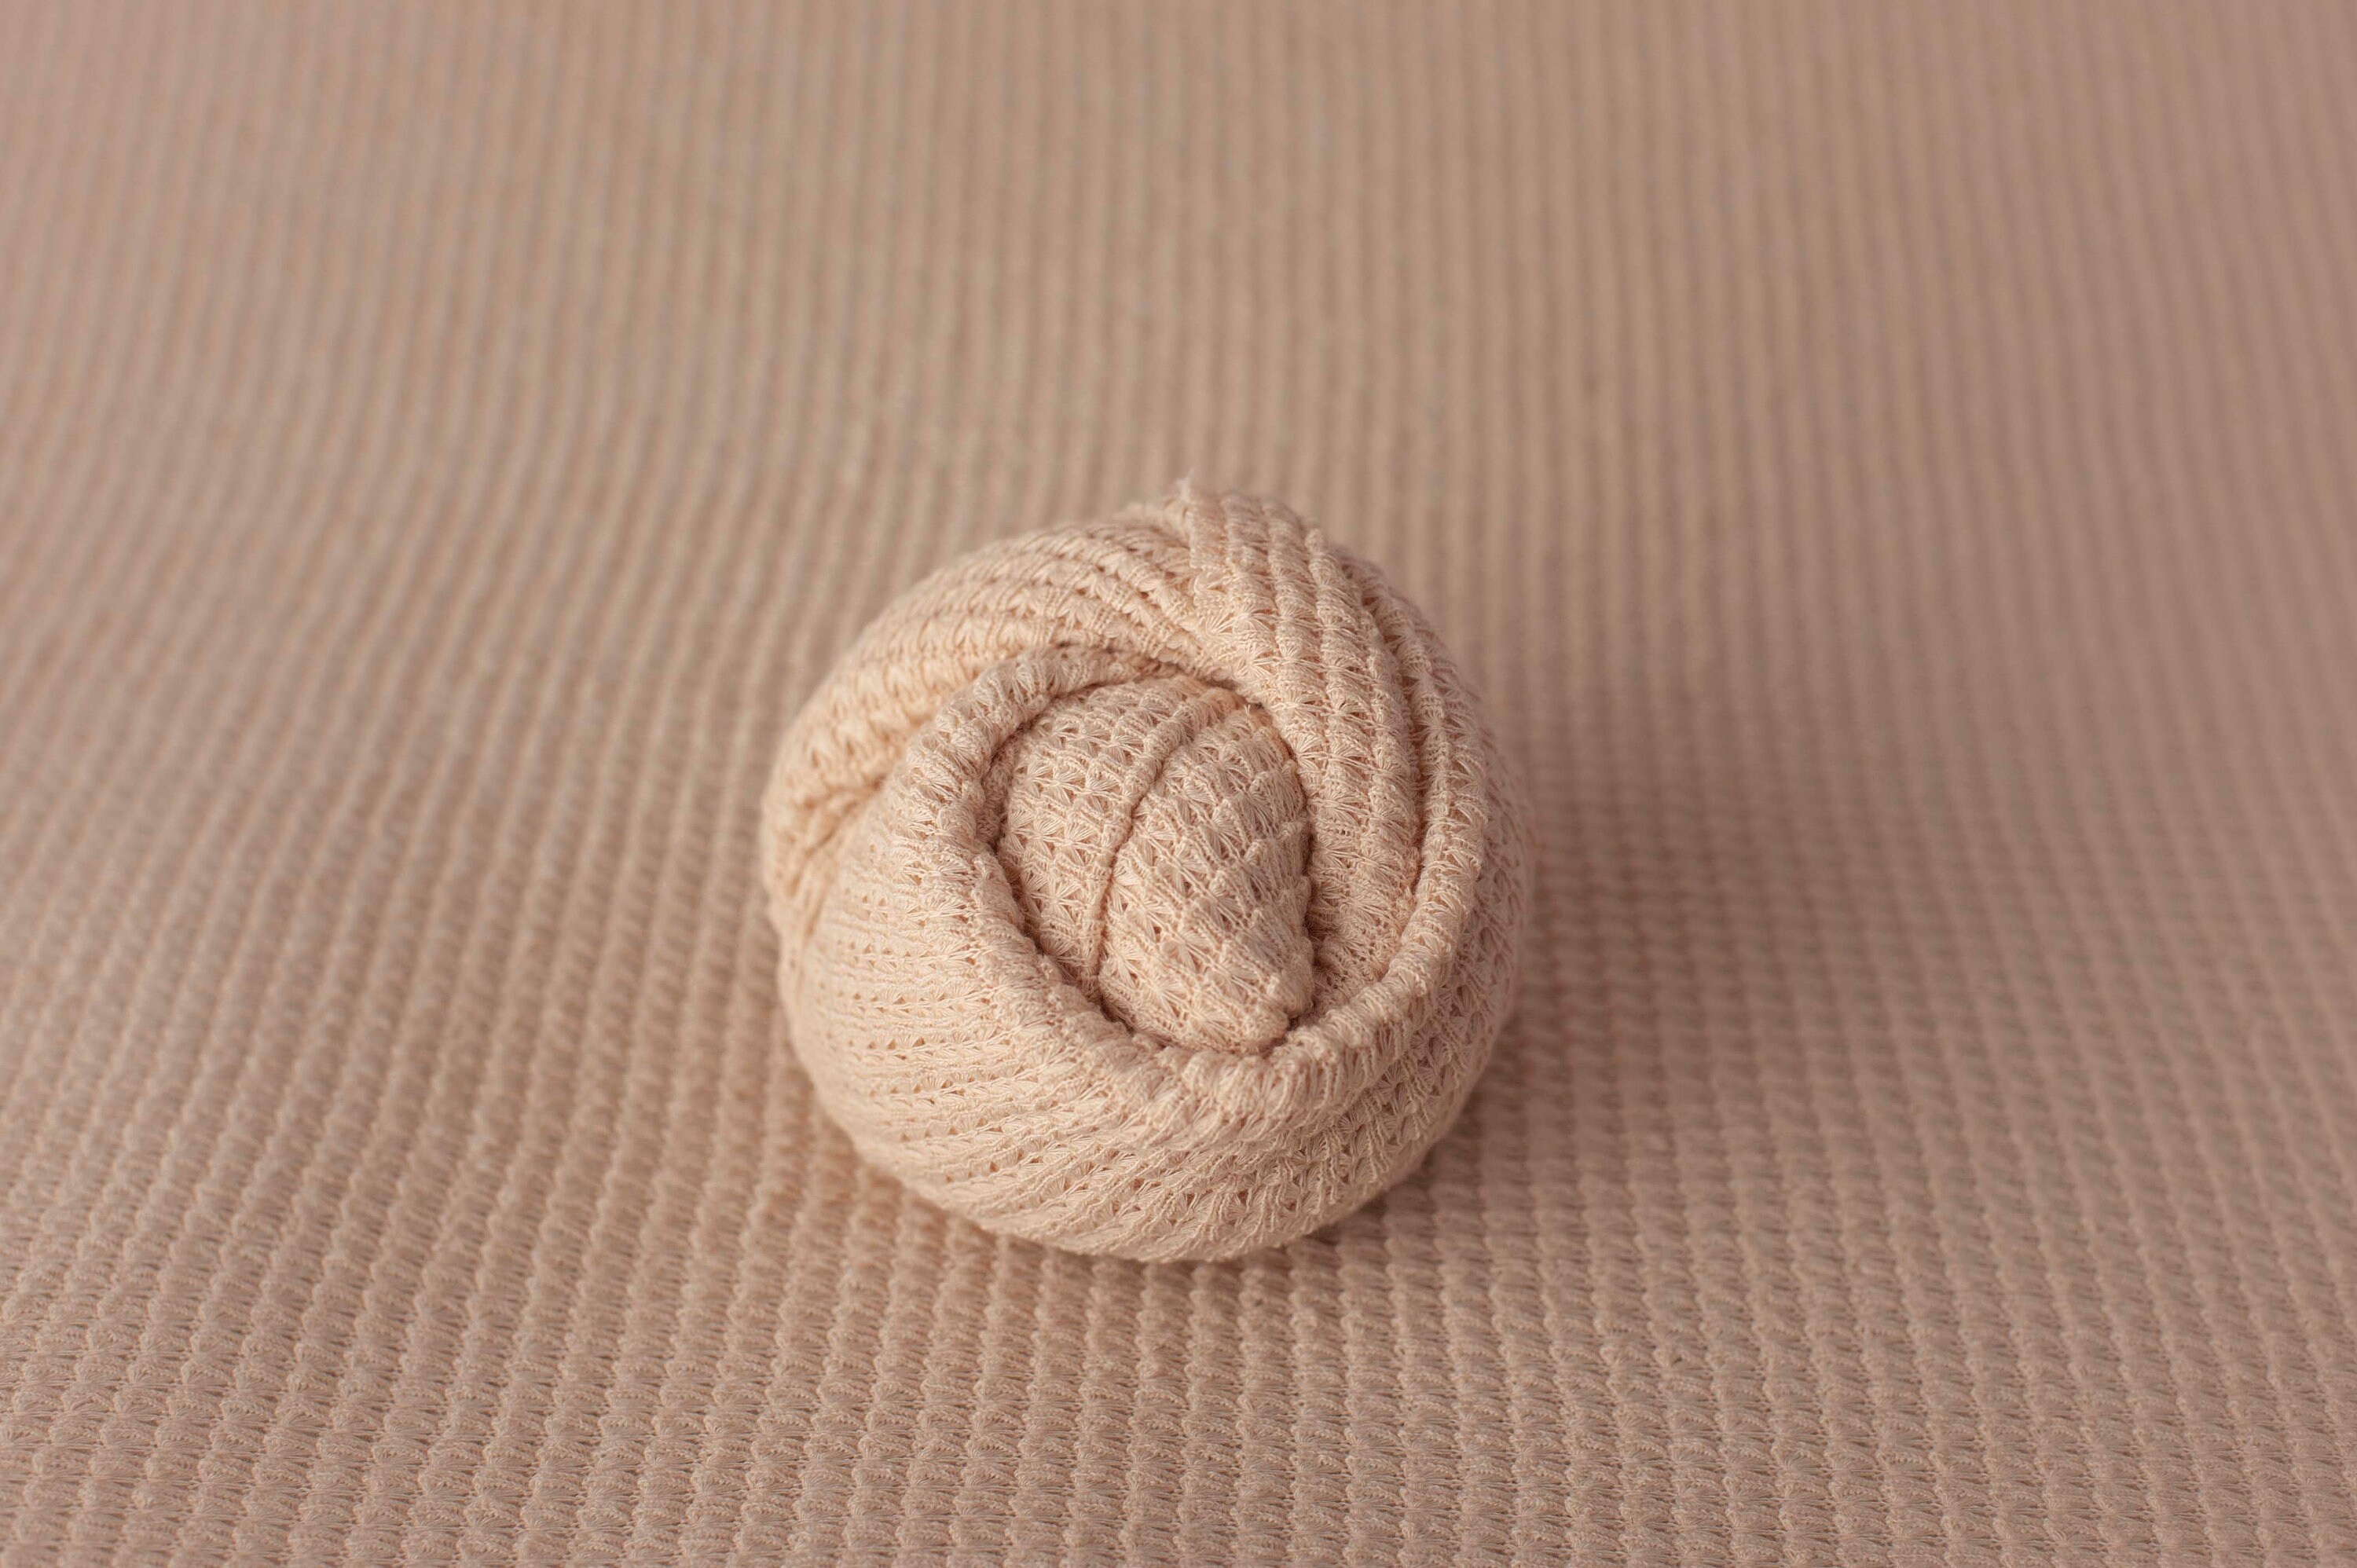 Grid Wrap Newborn Fringe Knit Wrap Tan Cream Newborn Weave Texture Grid Wrap Newborn Photo Prop Tan Cream Fabric Knit Stretch Wrap